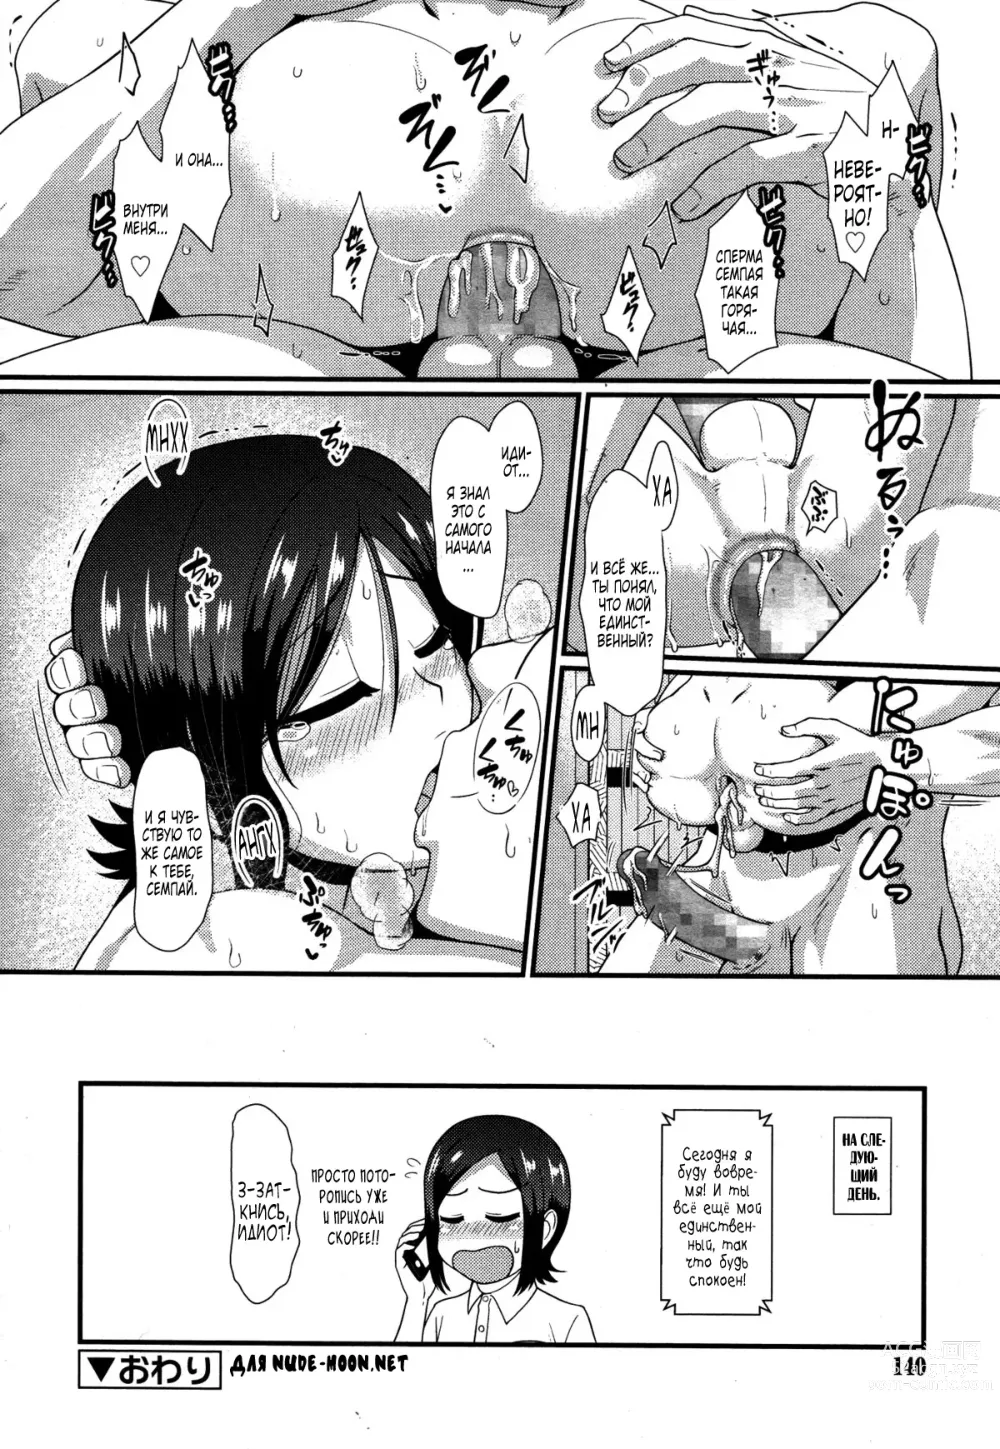 Page 20 of manga Tsuntsun Amaama